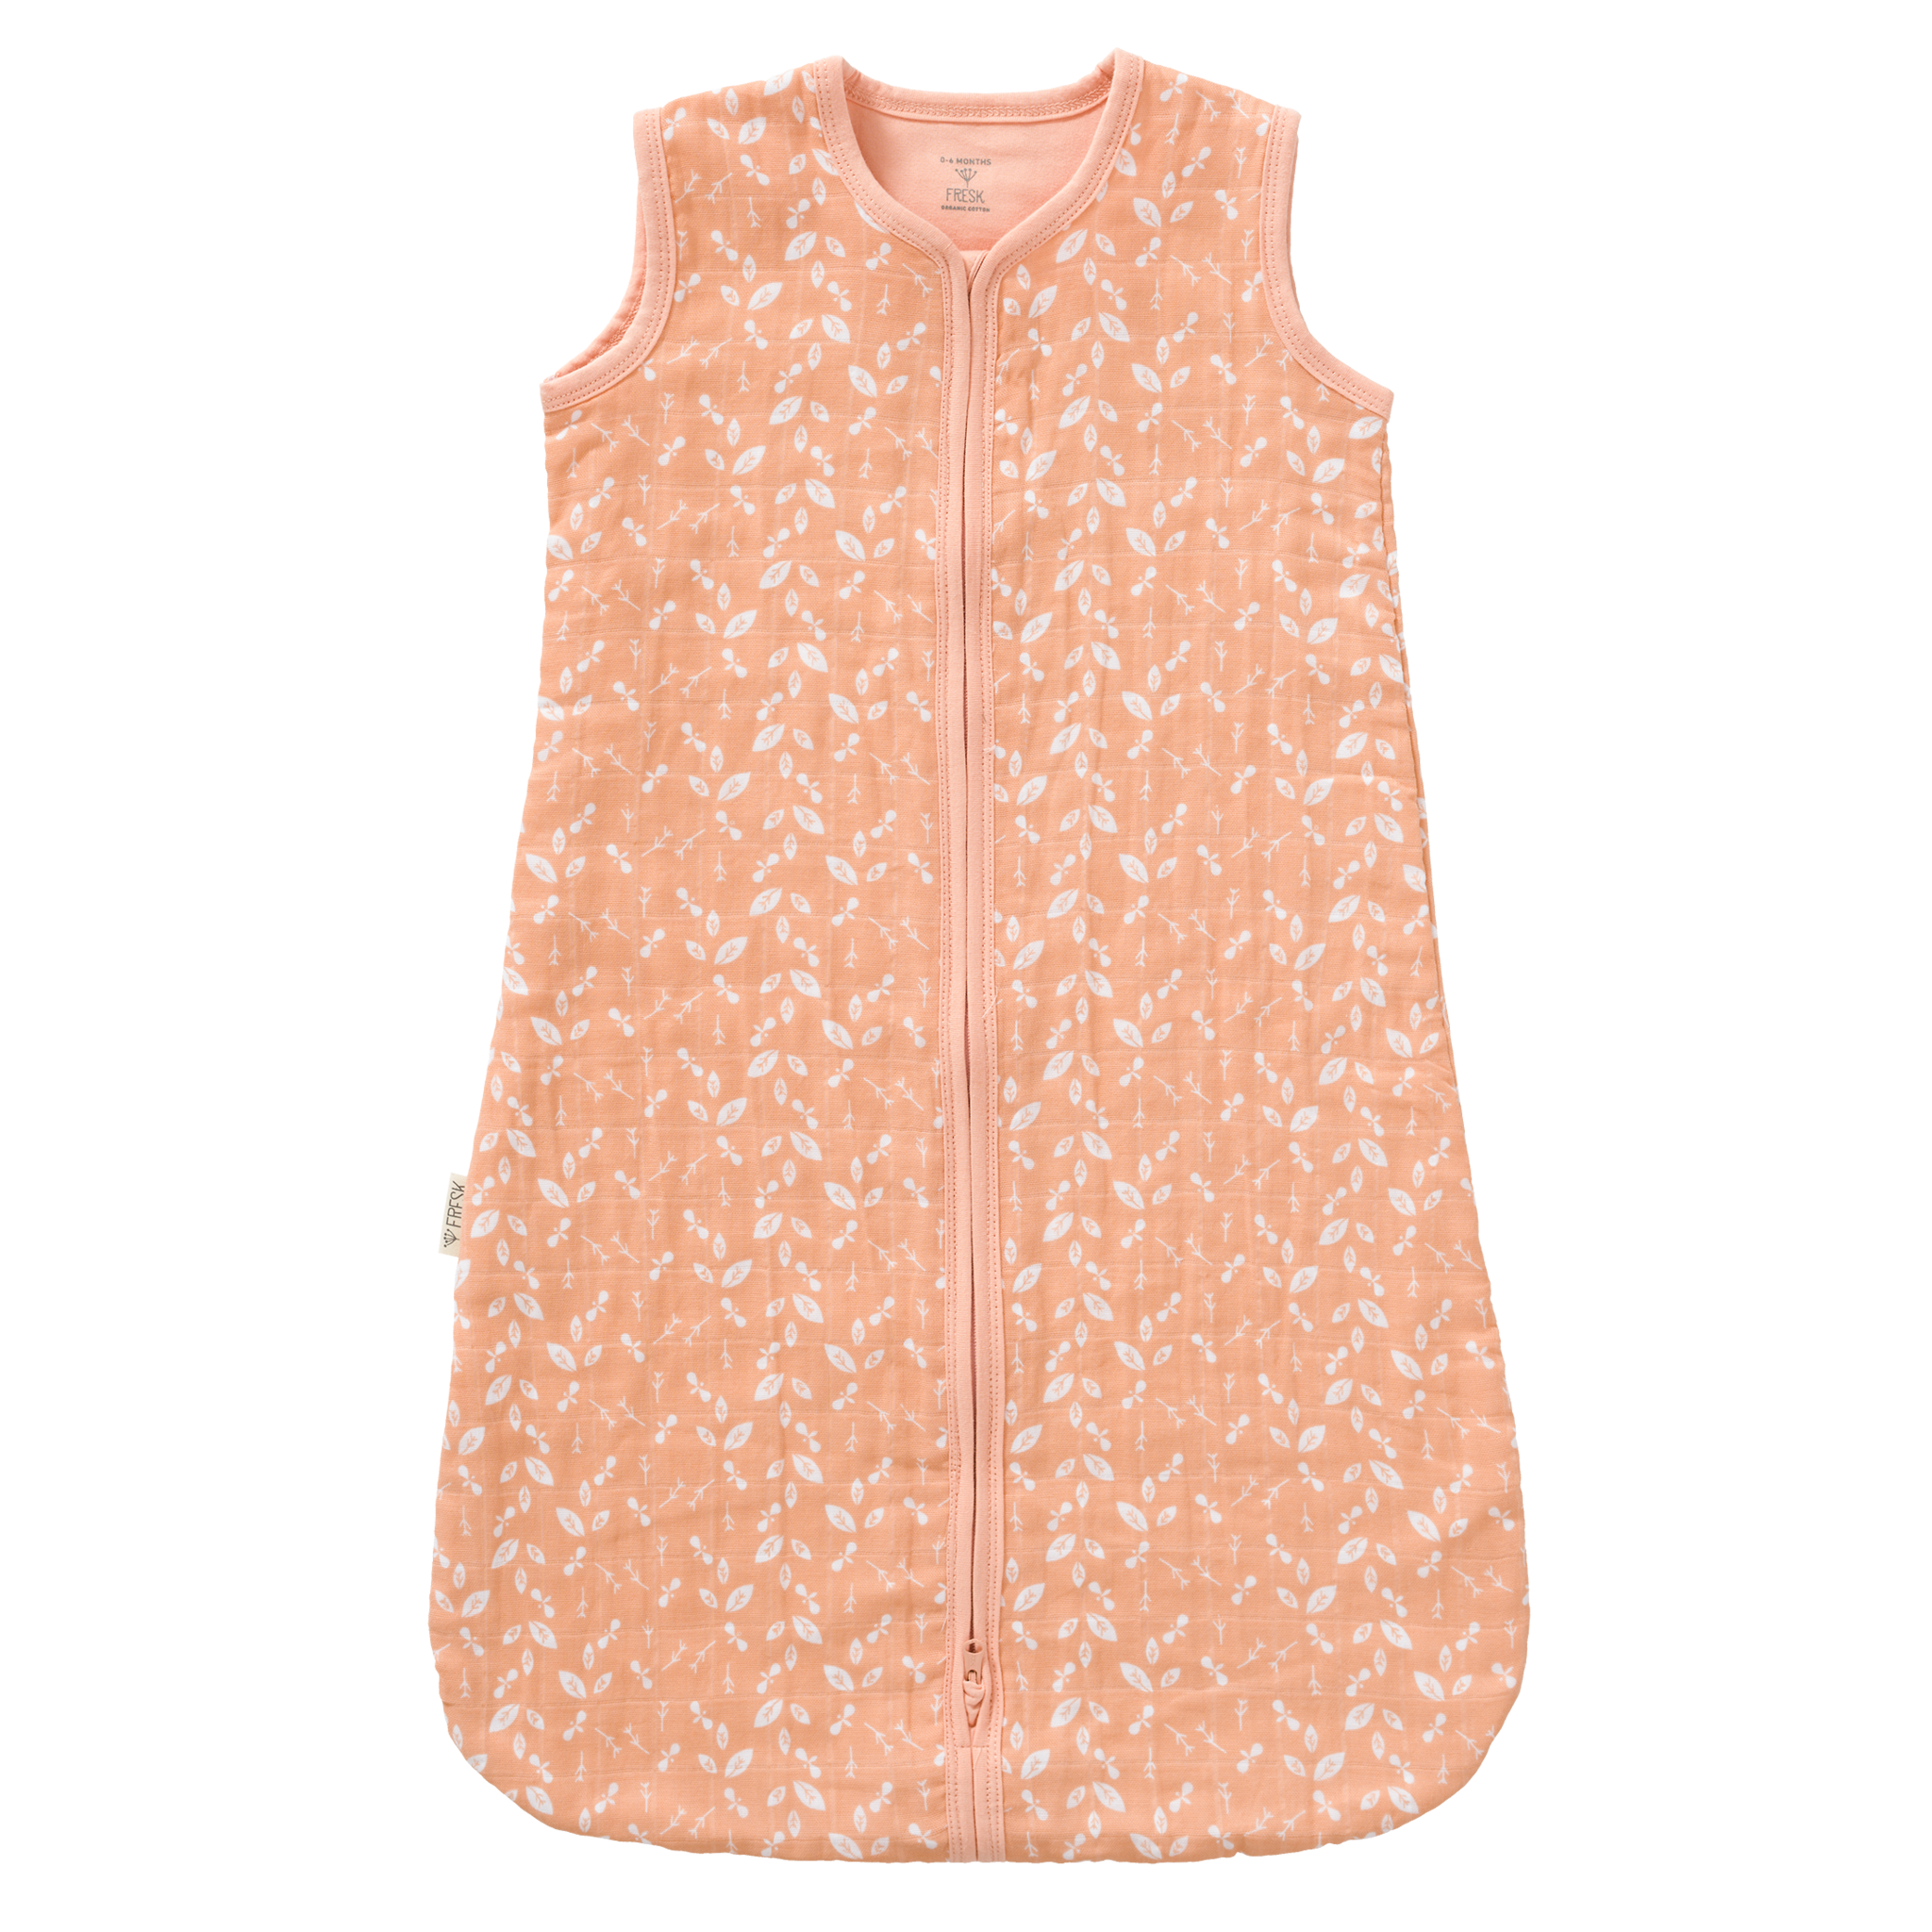 Baby Sommerschlafsack aus Biobaumwolle, rosa mit Blätterprint in weiß, fair produziert von Fresk